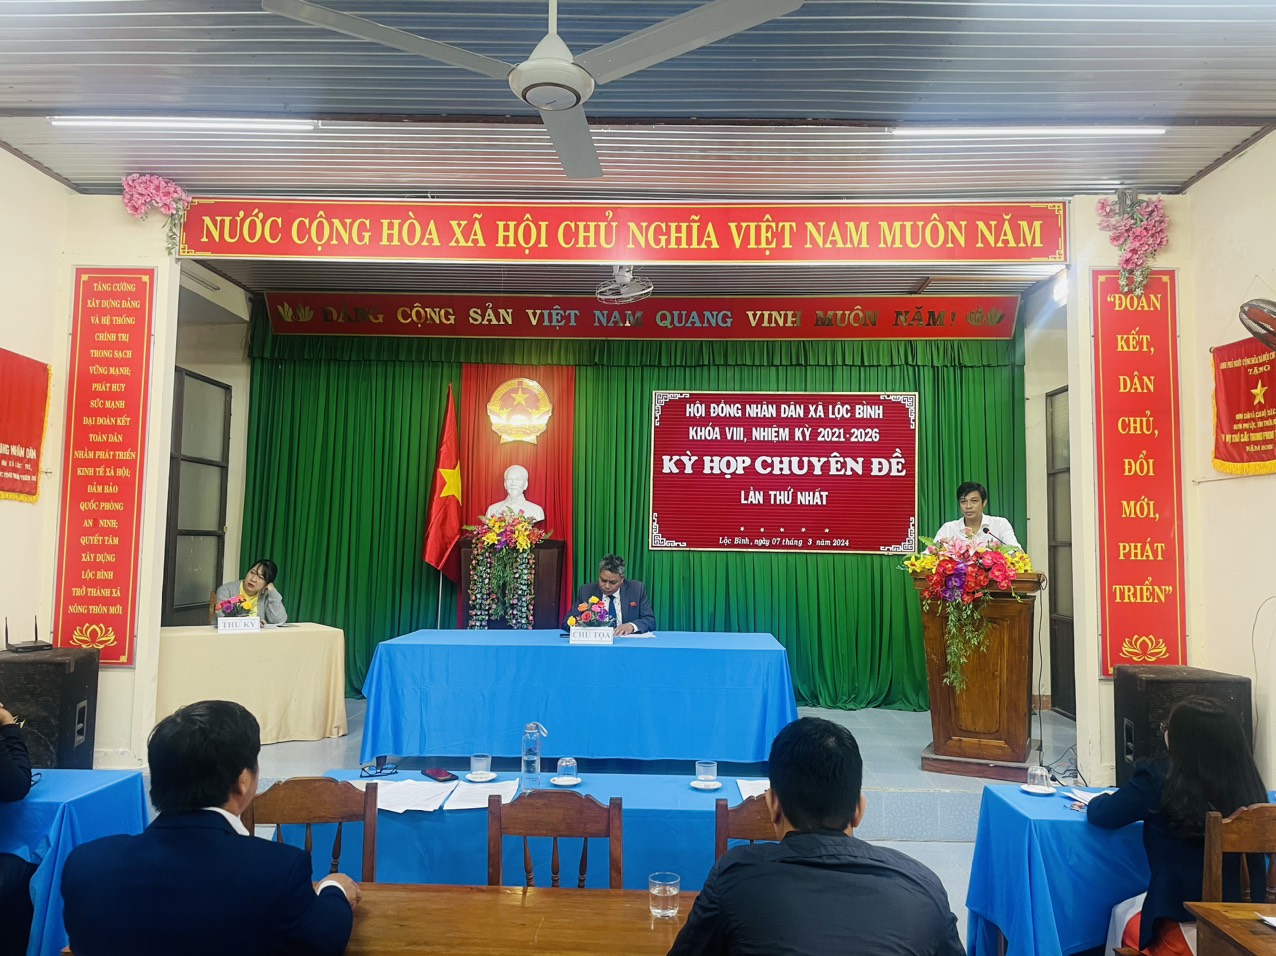 Đồng chí Nguyễn Trường, Bí thư Đảng ủy, phát biểu chỉ đạo tại kỳ họp